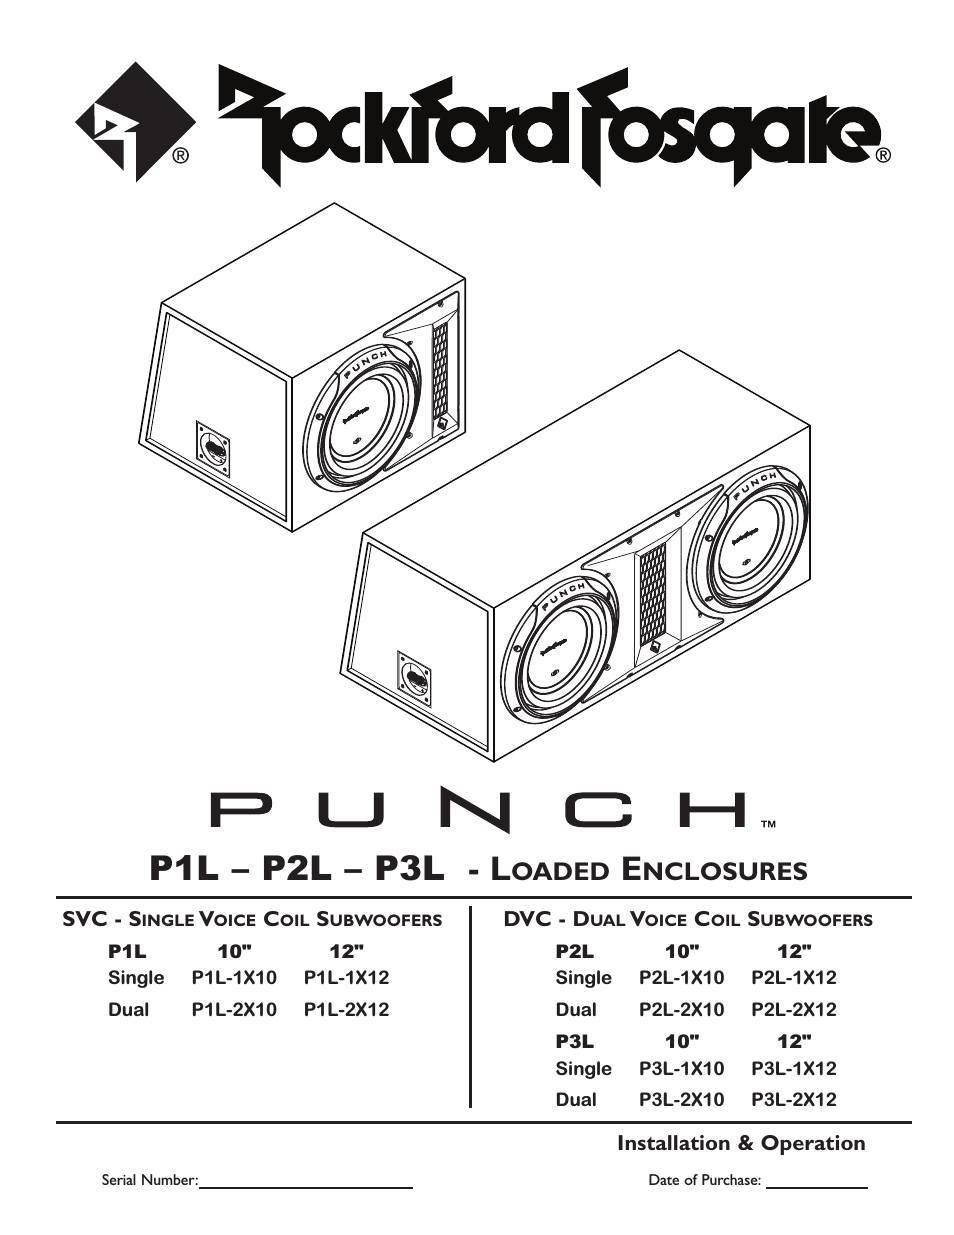 Punch P1L-1X10